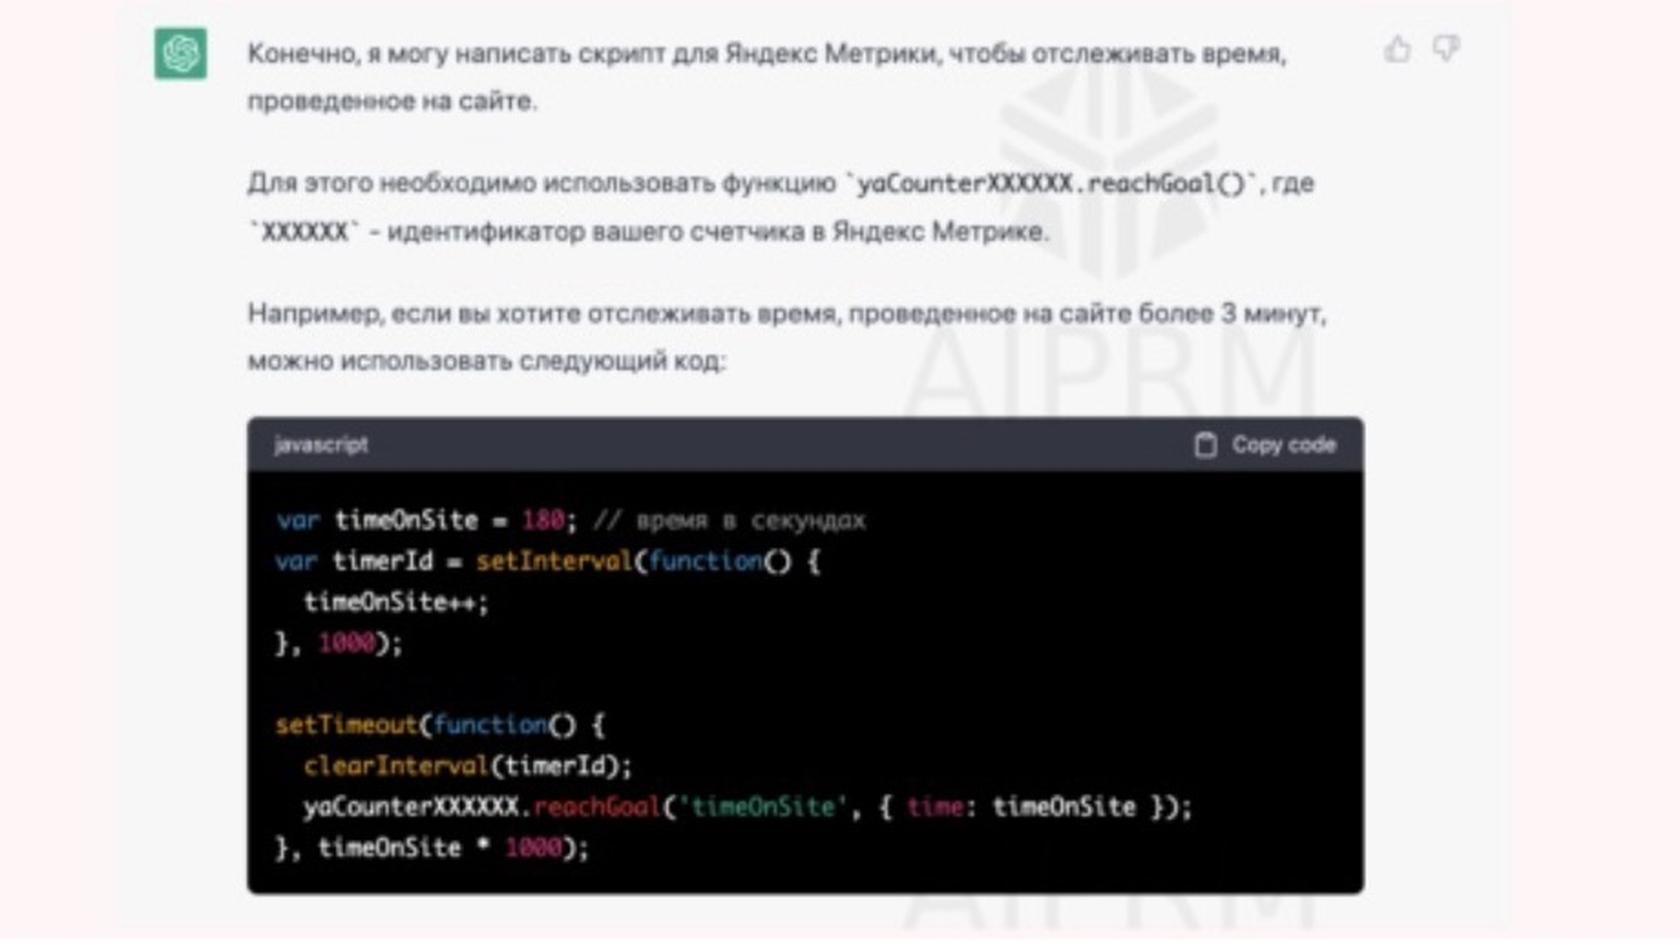 Пользовательский запрос на генерацию скрипта для отслеживания времени, проведенного на сайте / vc.ru